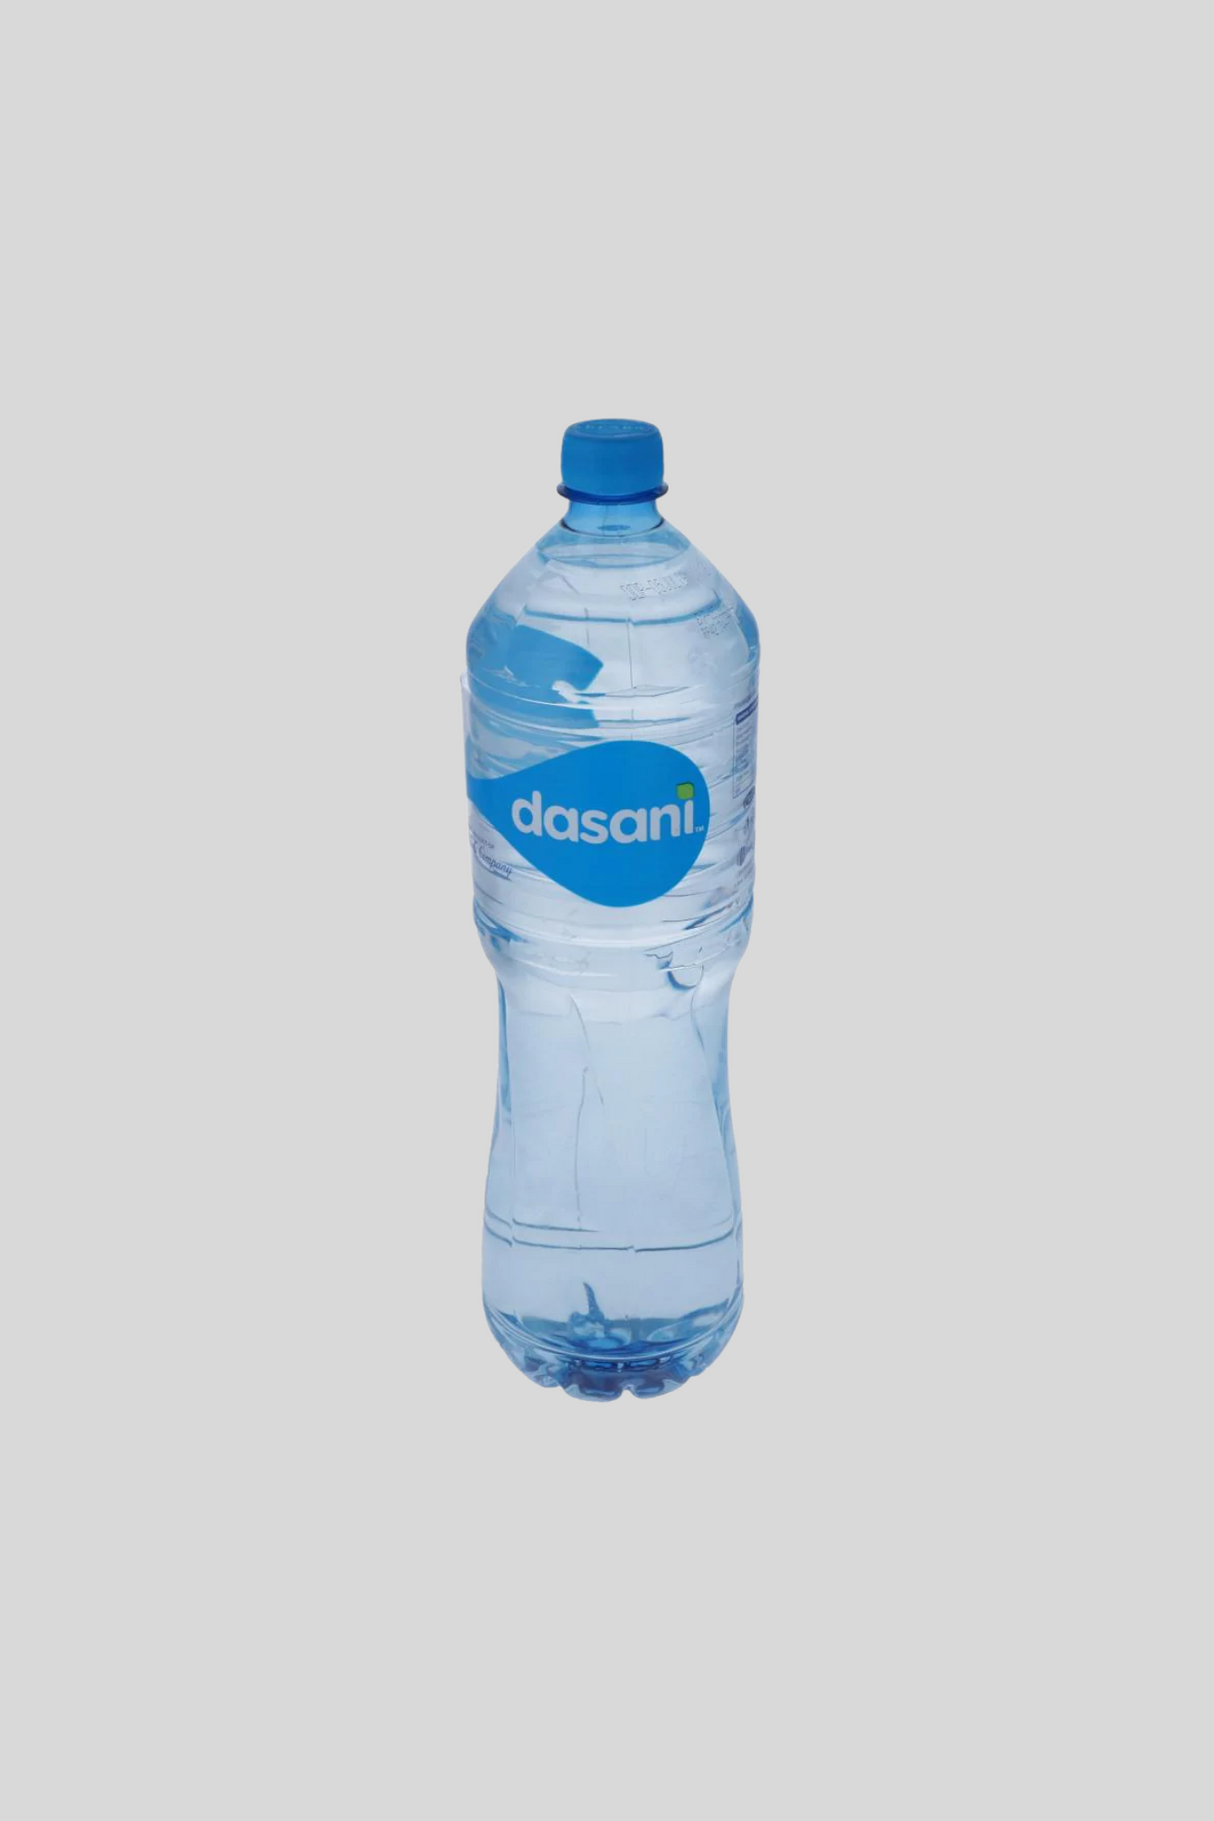 dasani mineral water 1.5l